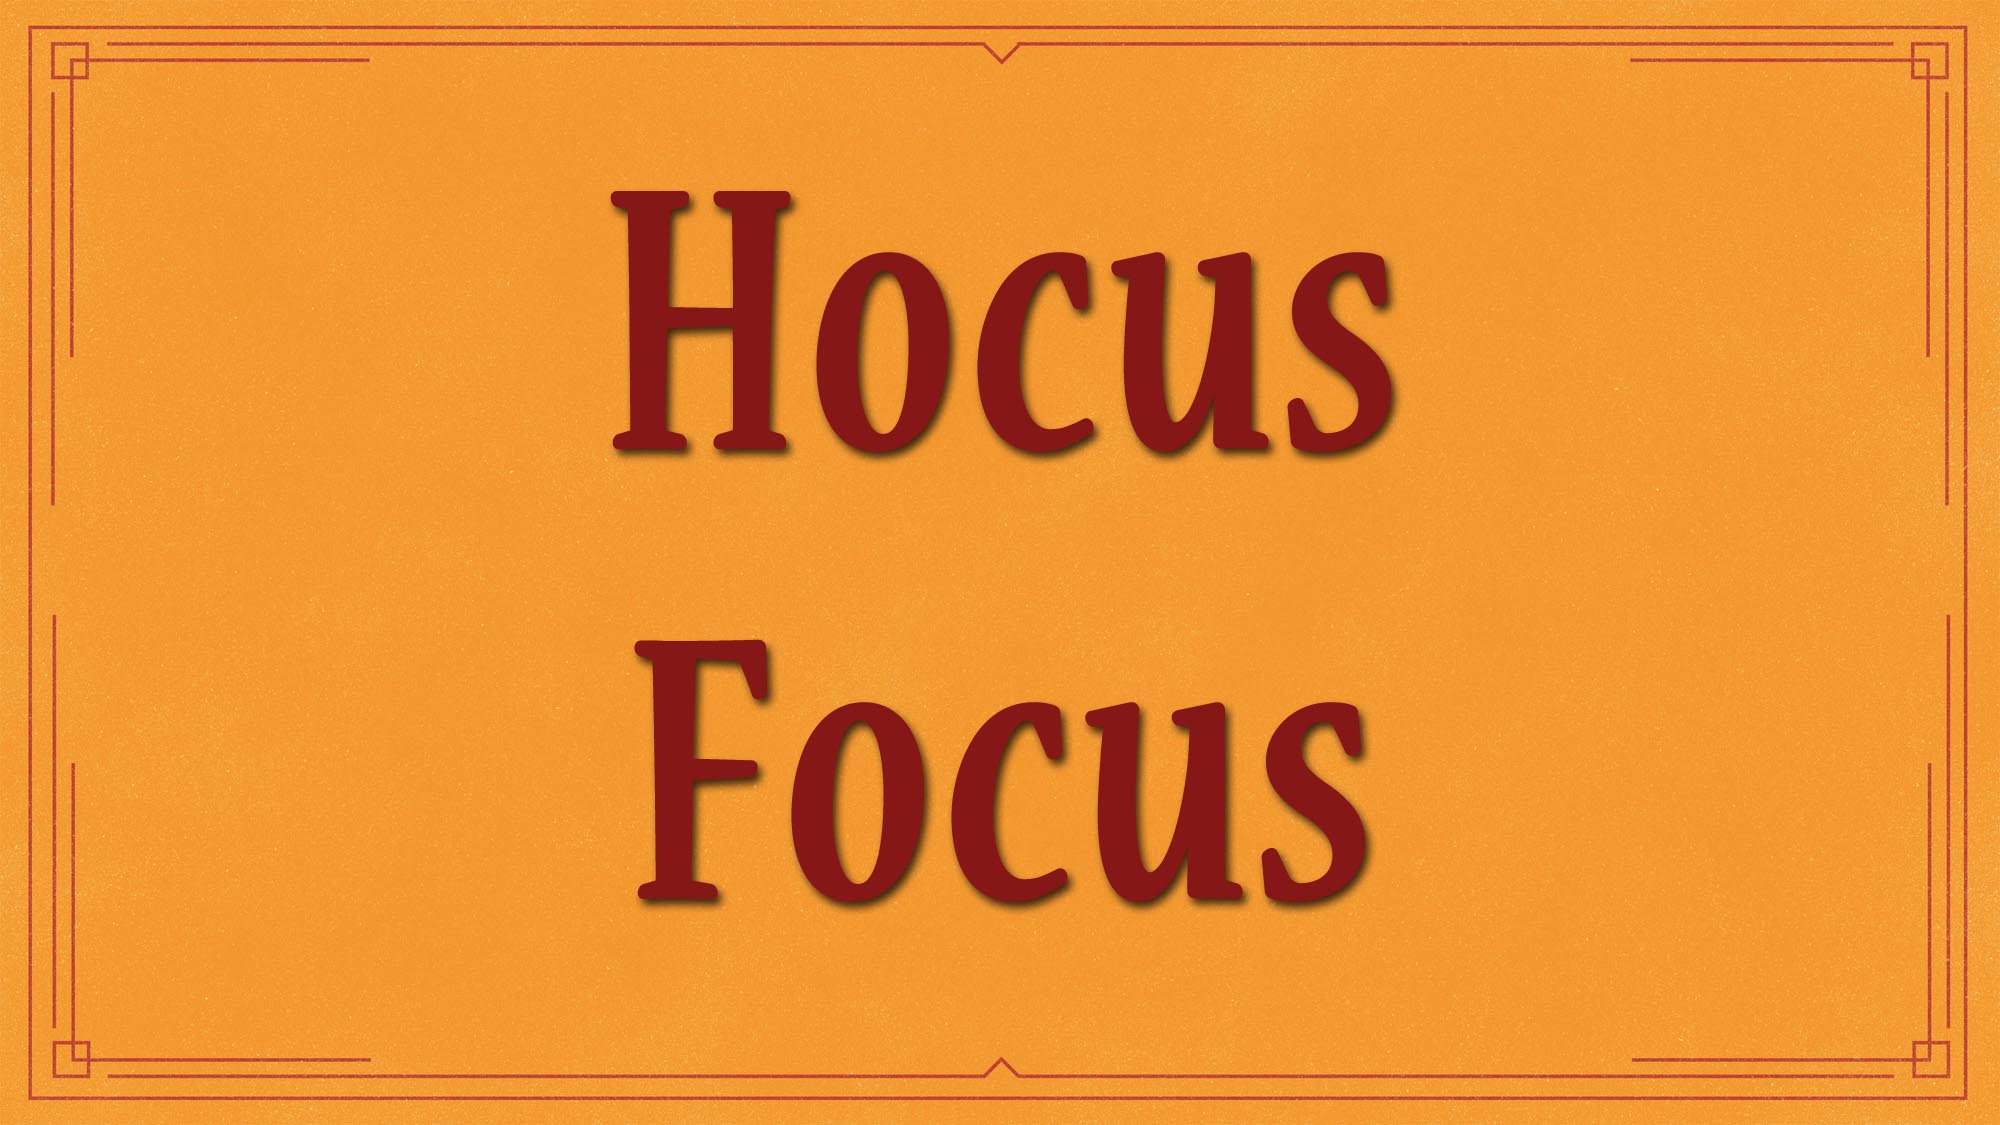 hocus focus kratom